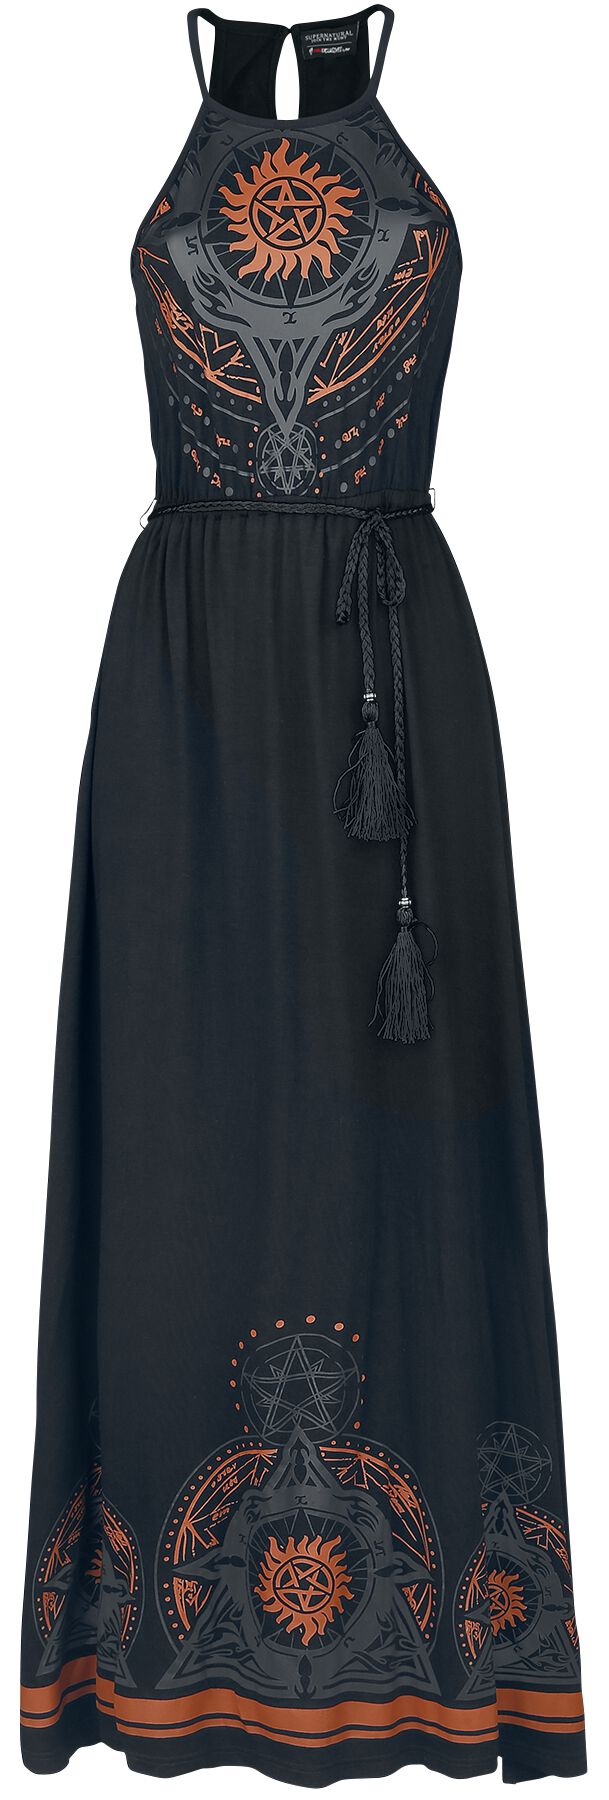 Robe longue de Supernatural - Mandala - S à XXL - pour Femme - noir